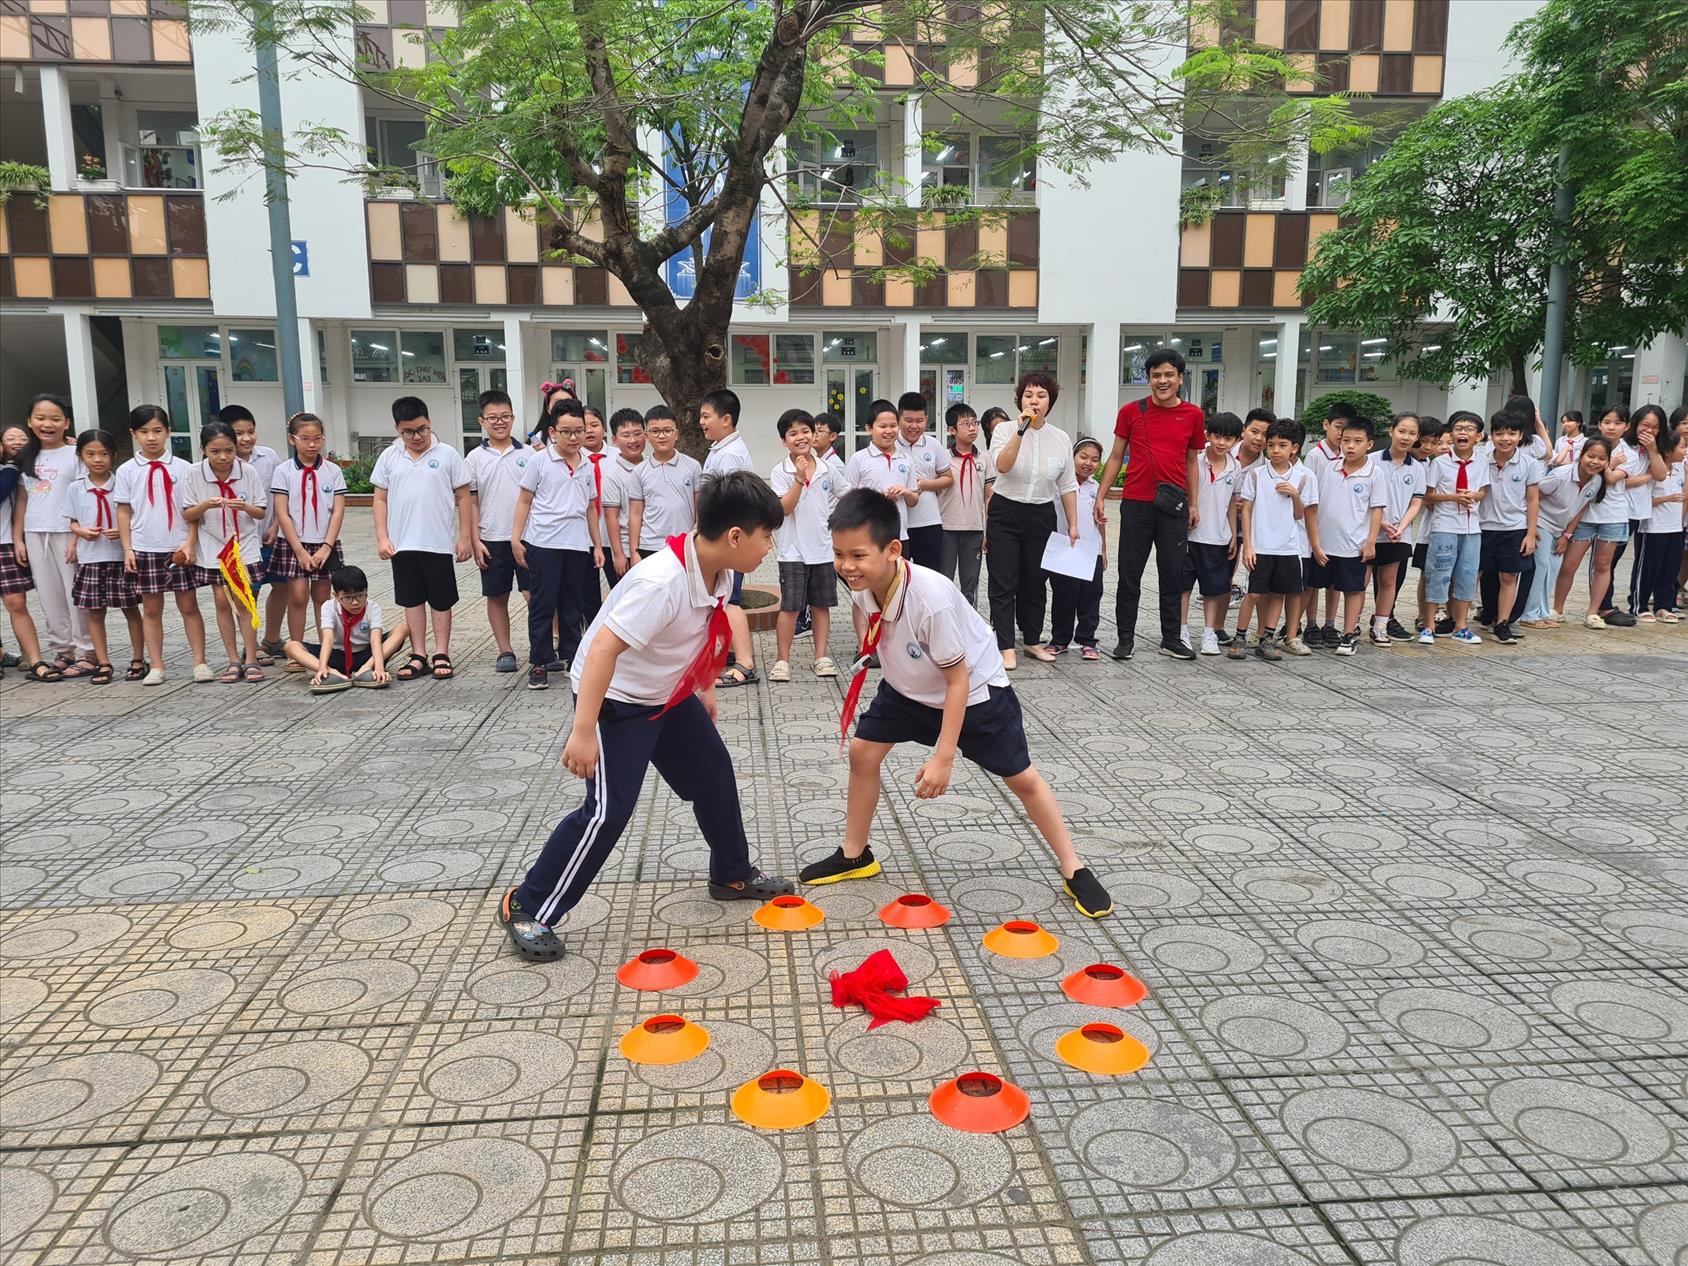 Lớp 4A1: Hào hứng tham gia Trải nghiệm sáng tạo với trò chơi dân gian “Cướp cờ”